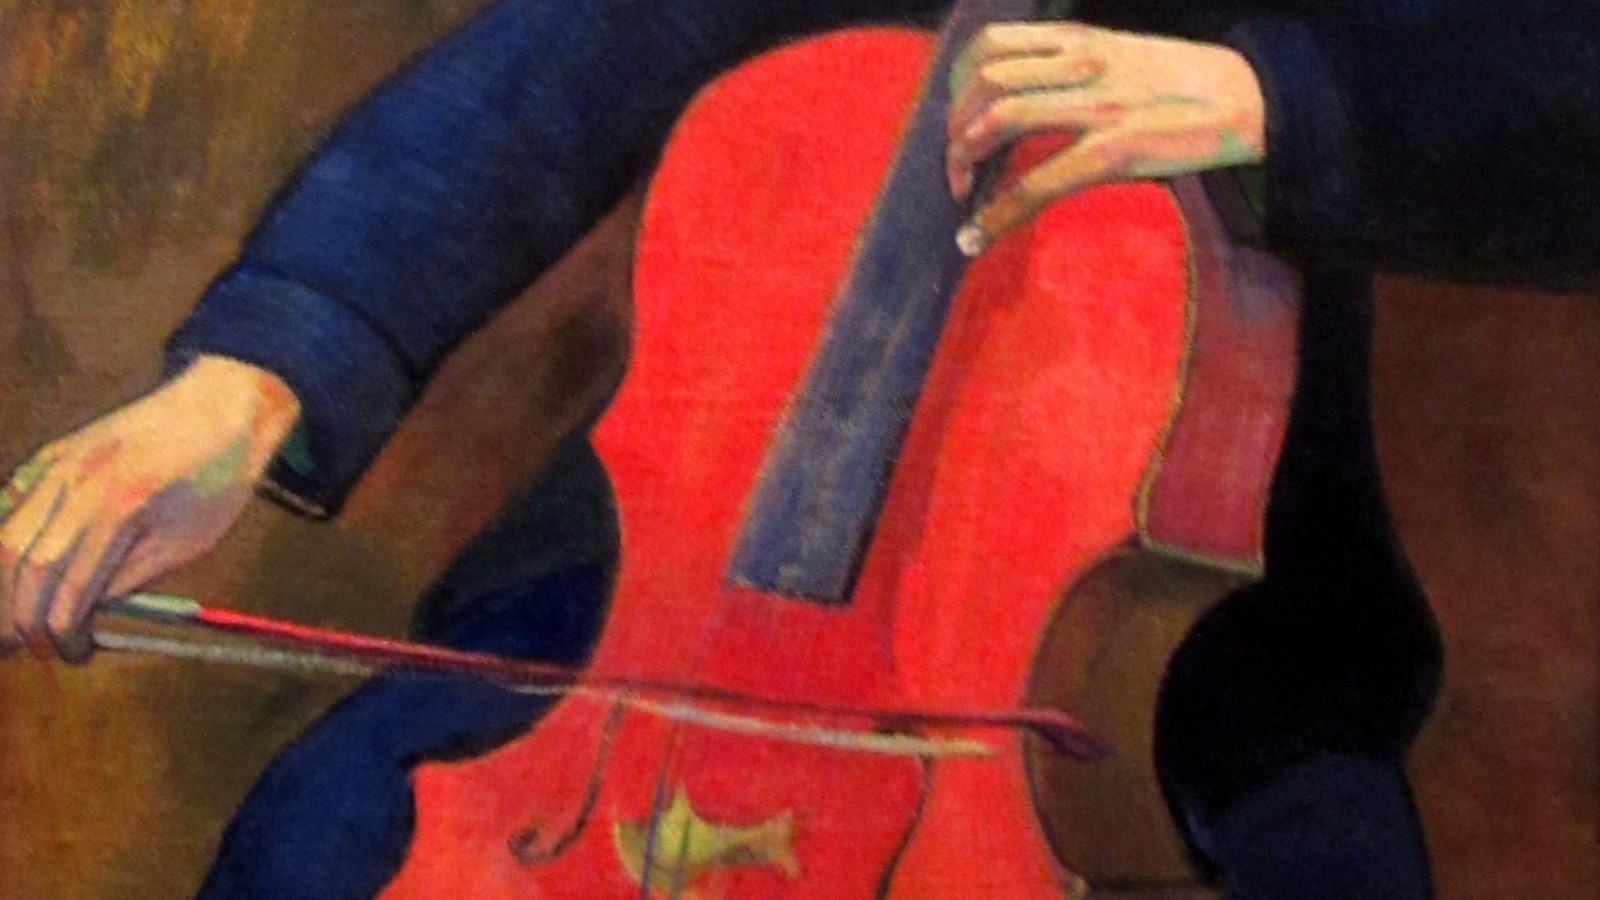  Pasión por el violonchelo